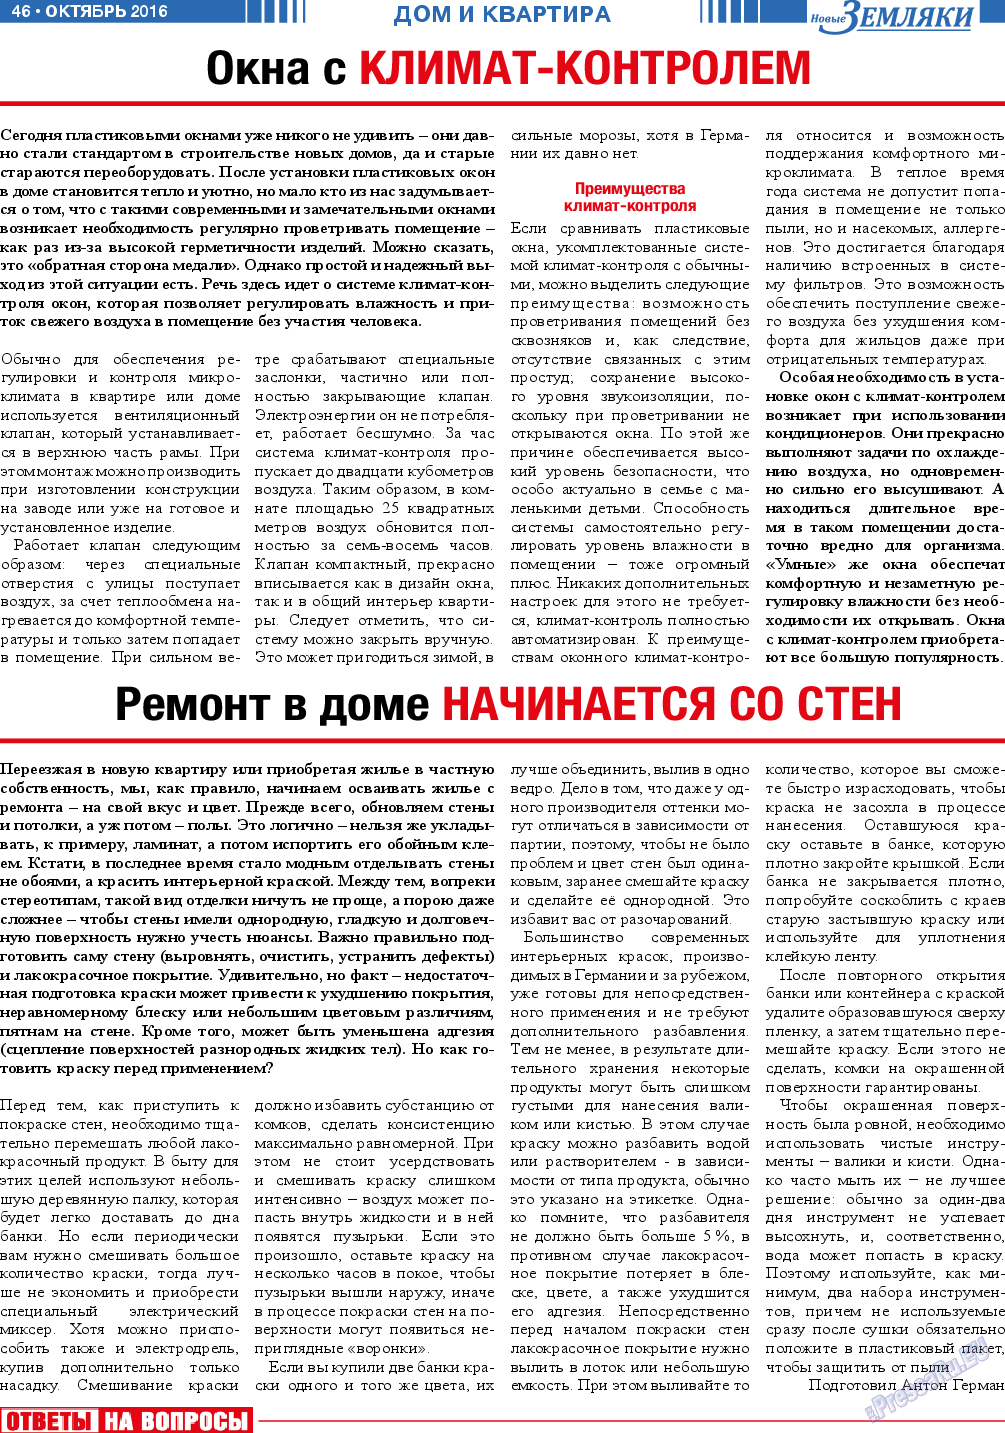 Новые Земляки, газета. 2016 №10 стр.46